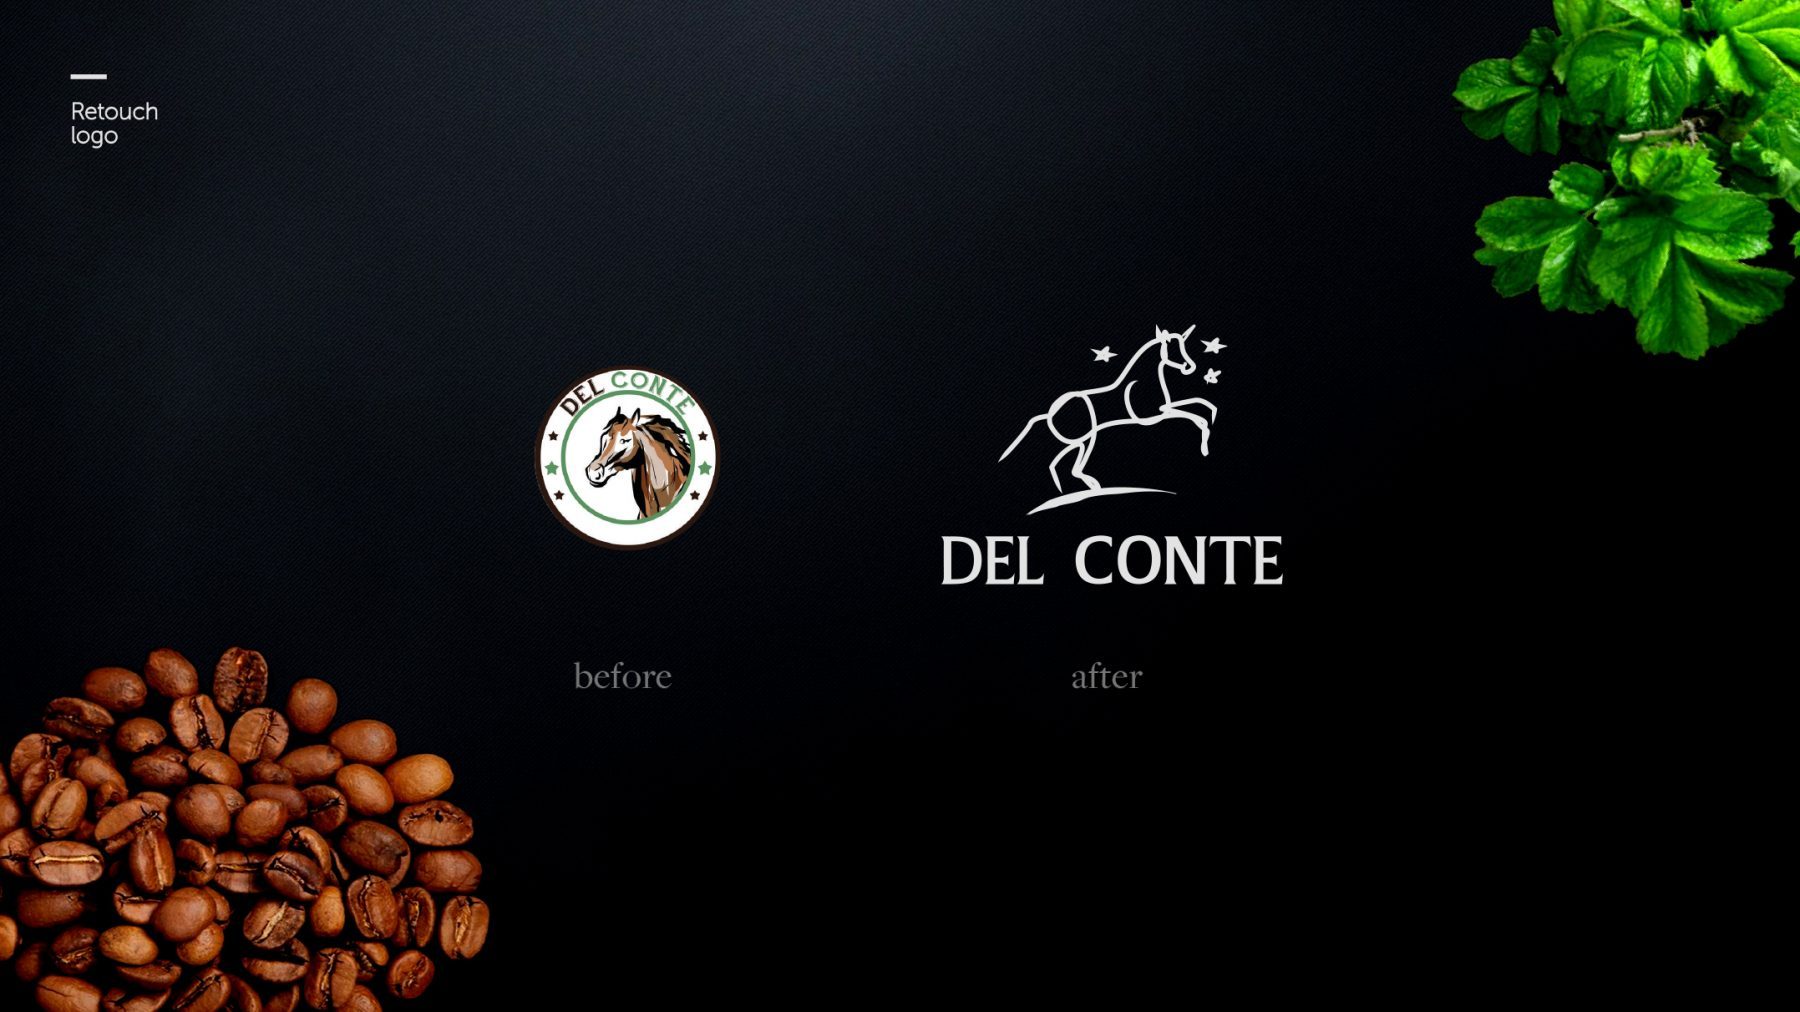 Del Conte rebranding Preium Coffee